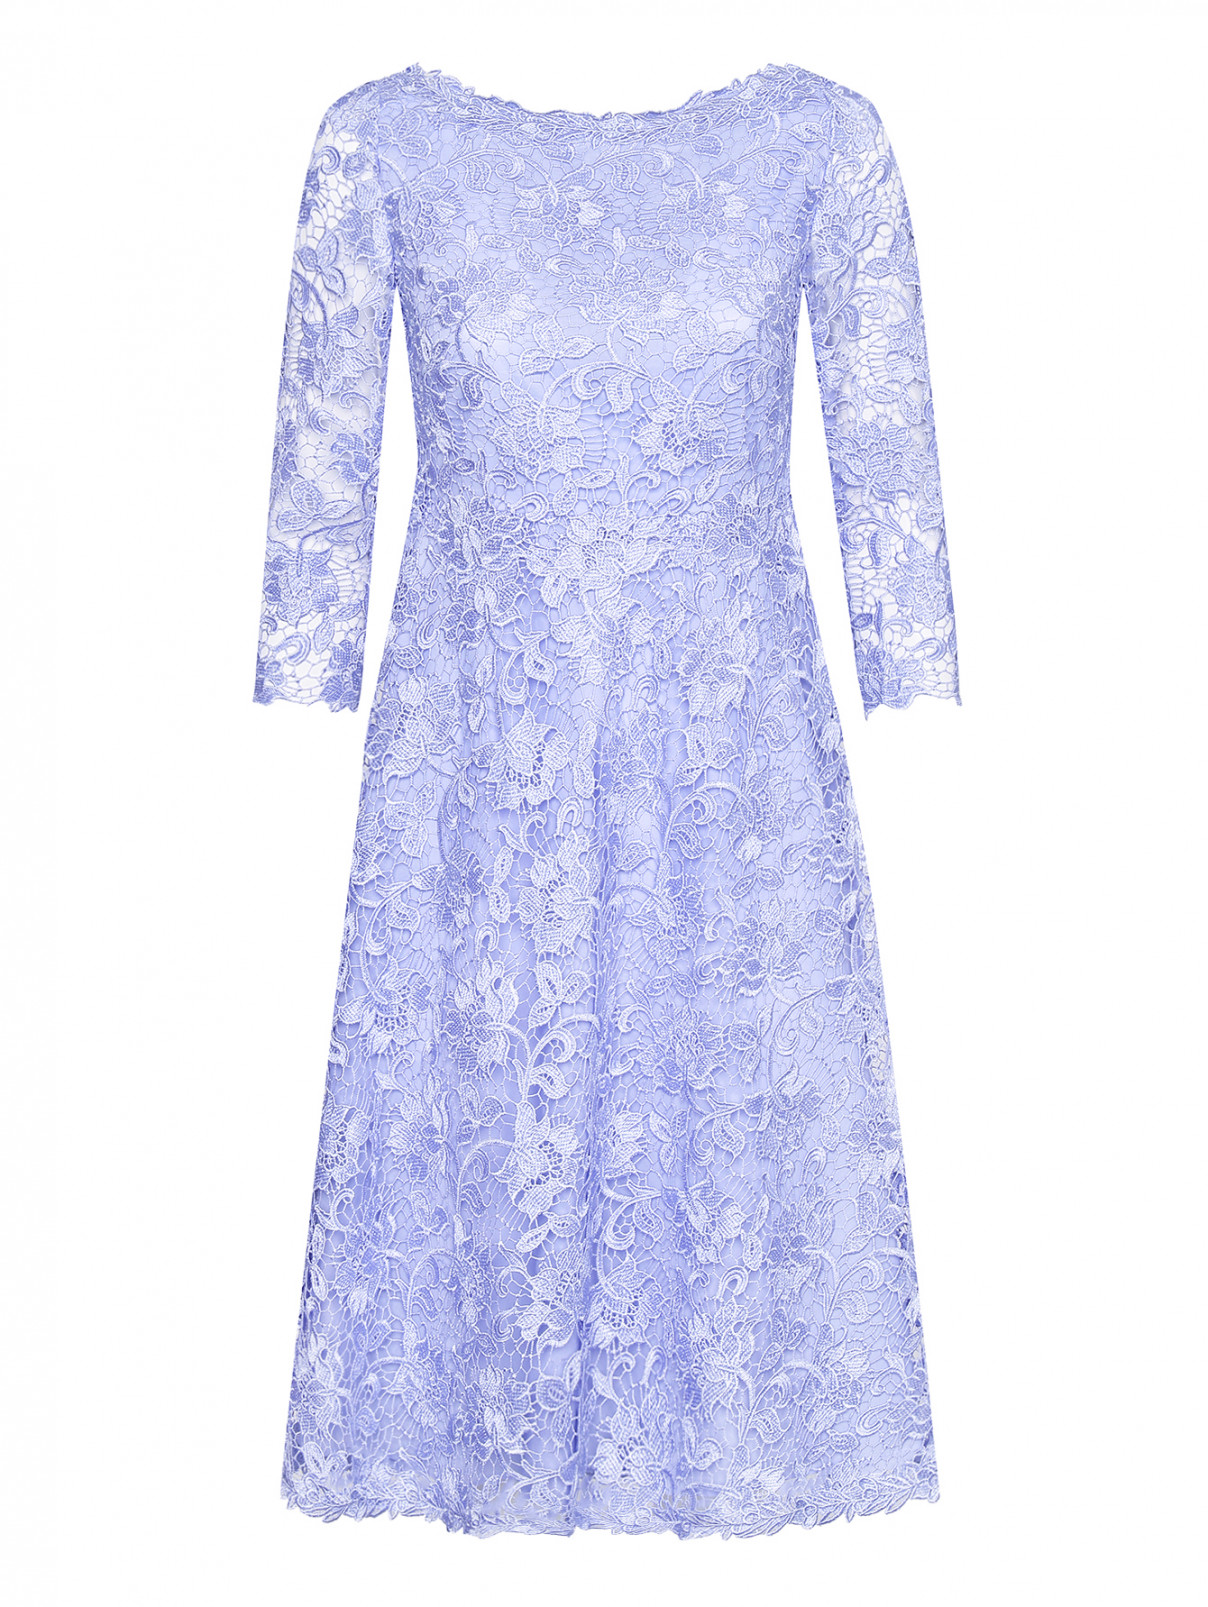 Кружевное платье с рукавом 3/4 Luisa Spagnoli  –  Общий вид  – Цвет:  Фиолетовый